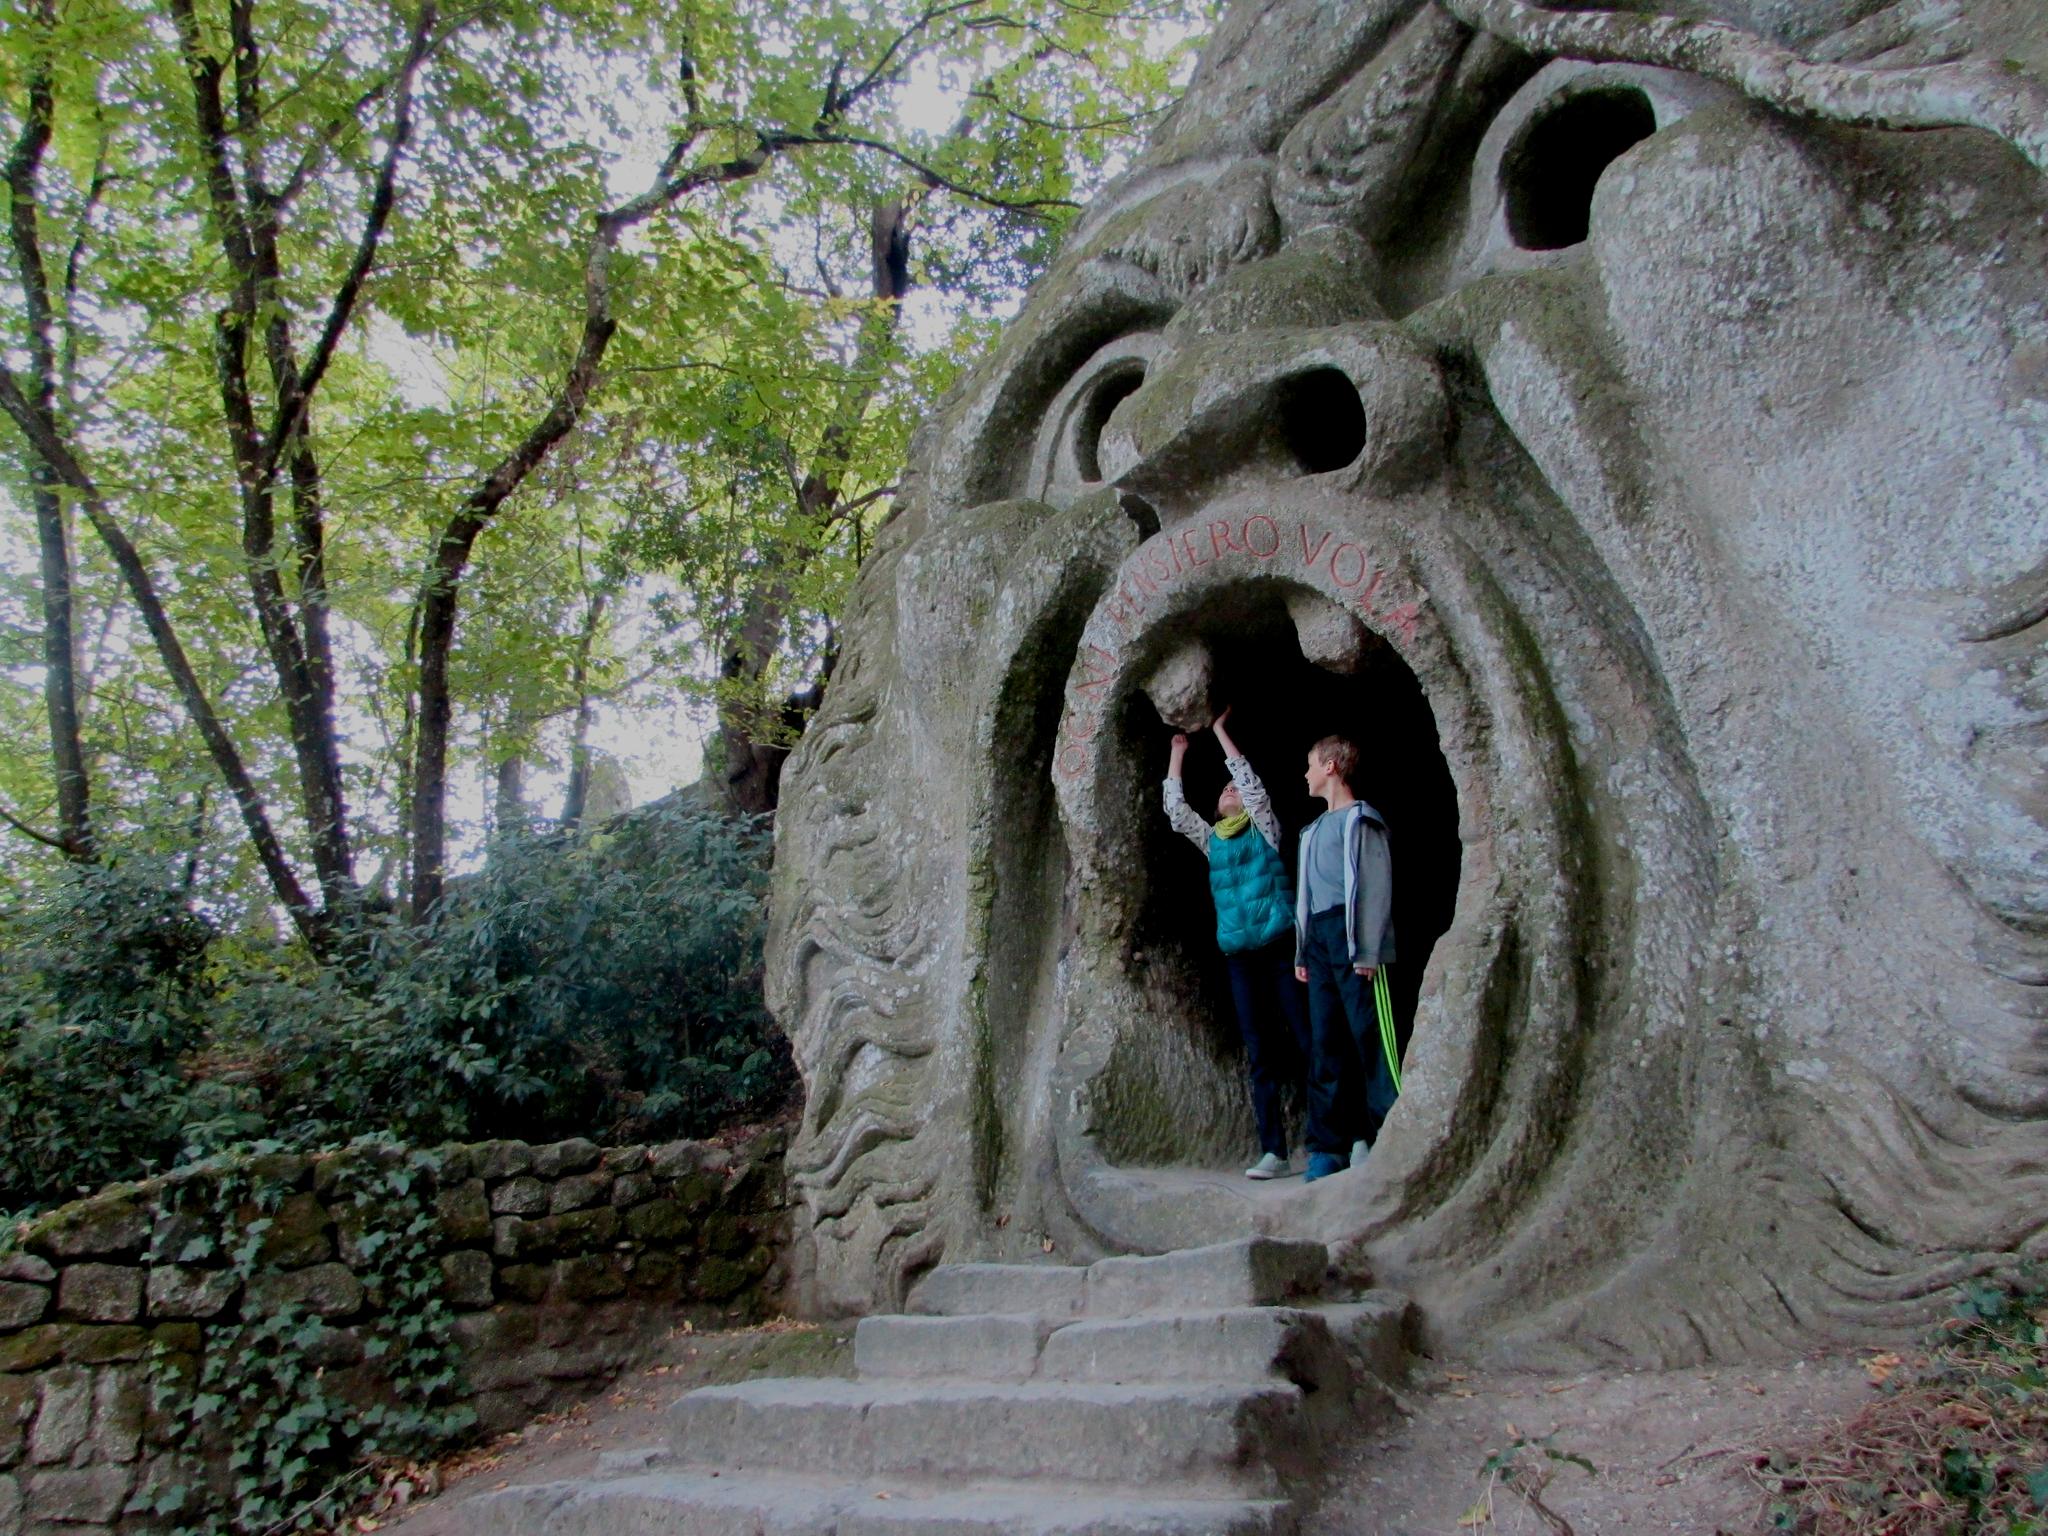 EN FANTASIVERDEN: Monsterparken Parco dei Mostri nord for Roma er full av store, merkelige statuer som pirrer fantasien. Statuen Orcus skal være et bilde på helvetes porter og kampen mellom det onde og det gode. Du kan gå inn i den, og inskripsjonen over åpningen betyr Alle tanker flyr.